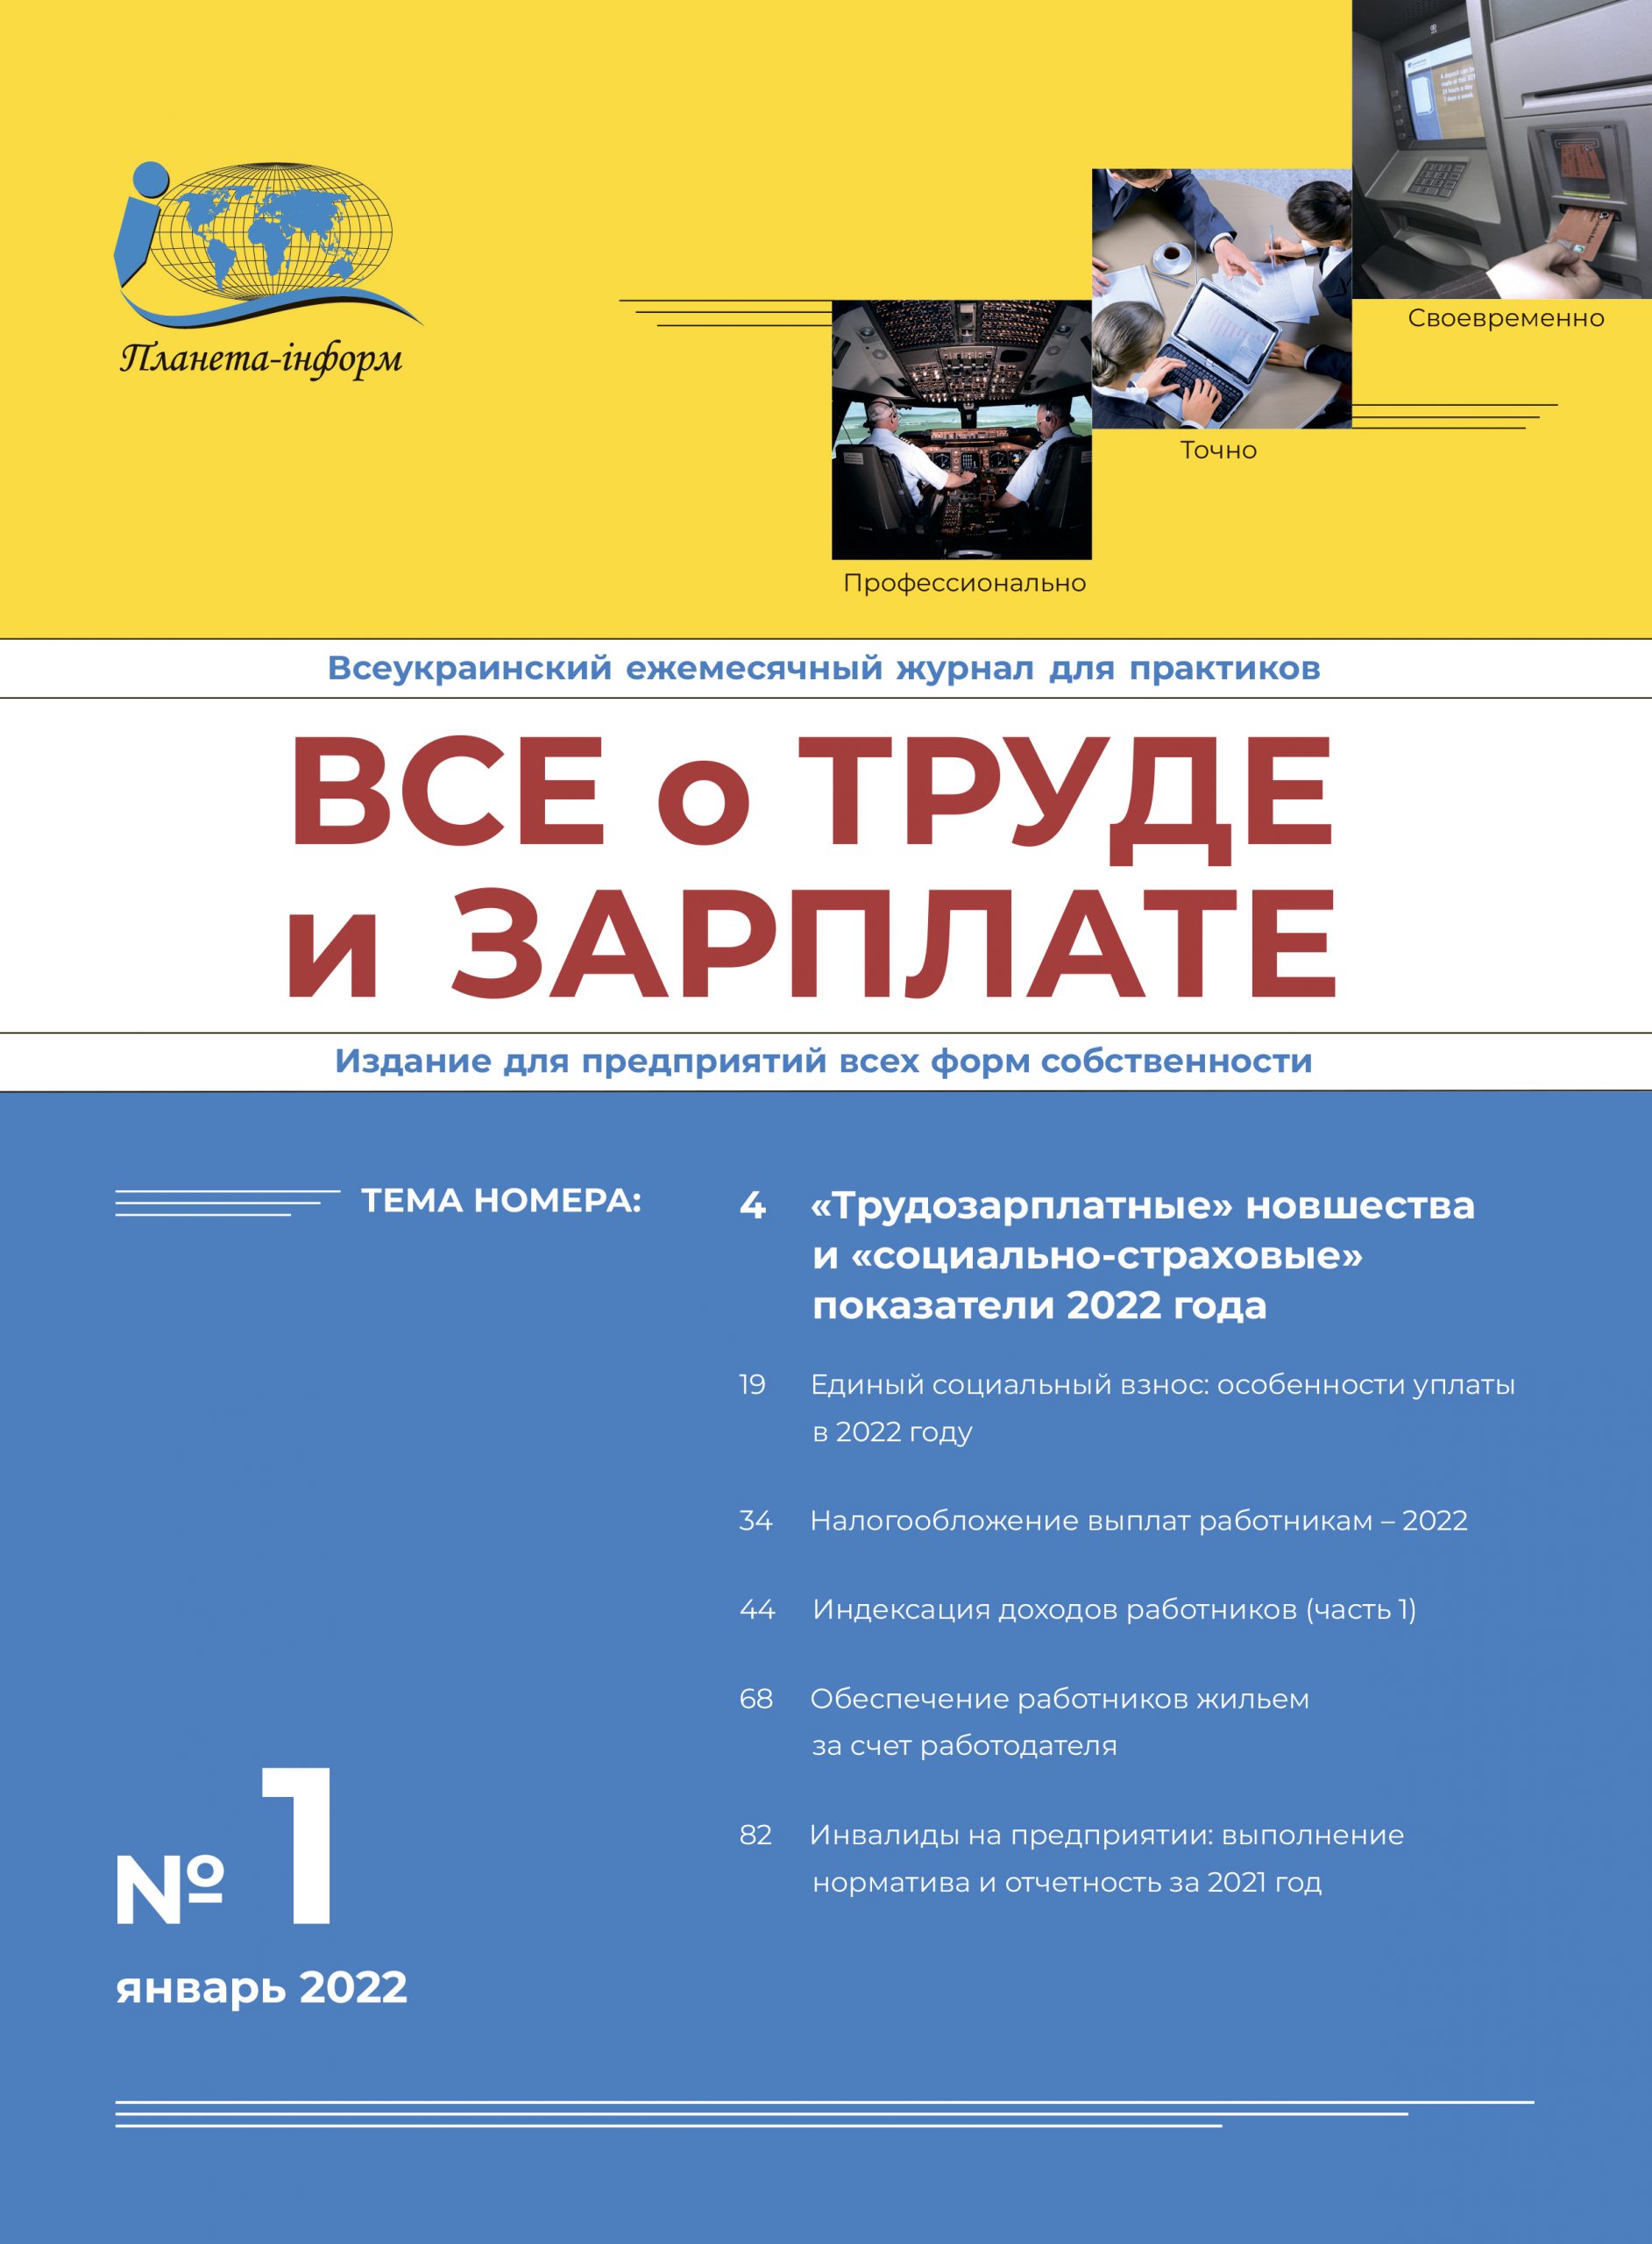 Журнал «Все о труде и зарплате» № 1/2022